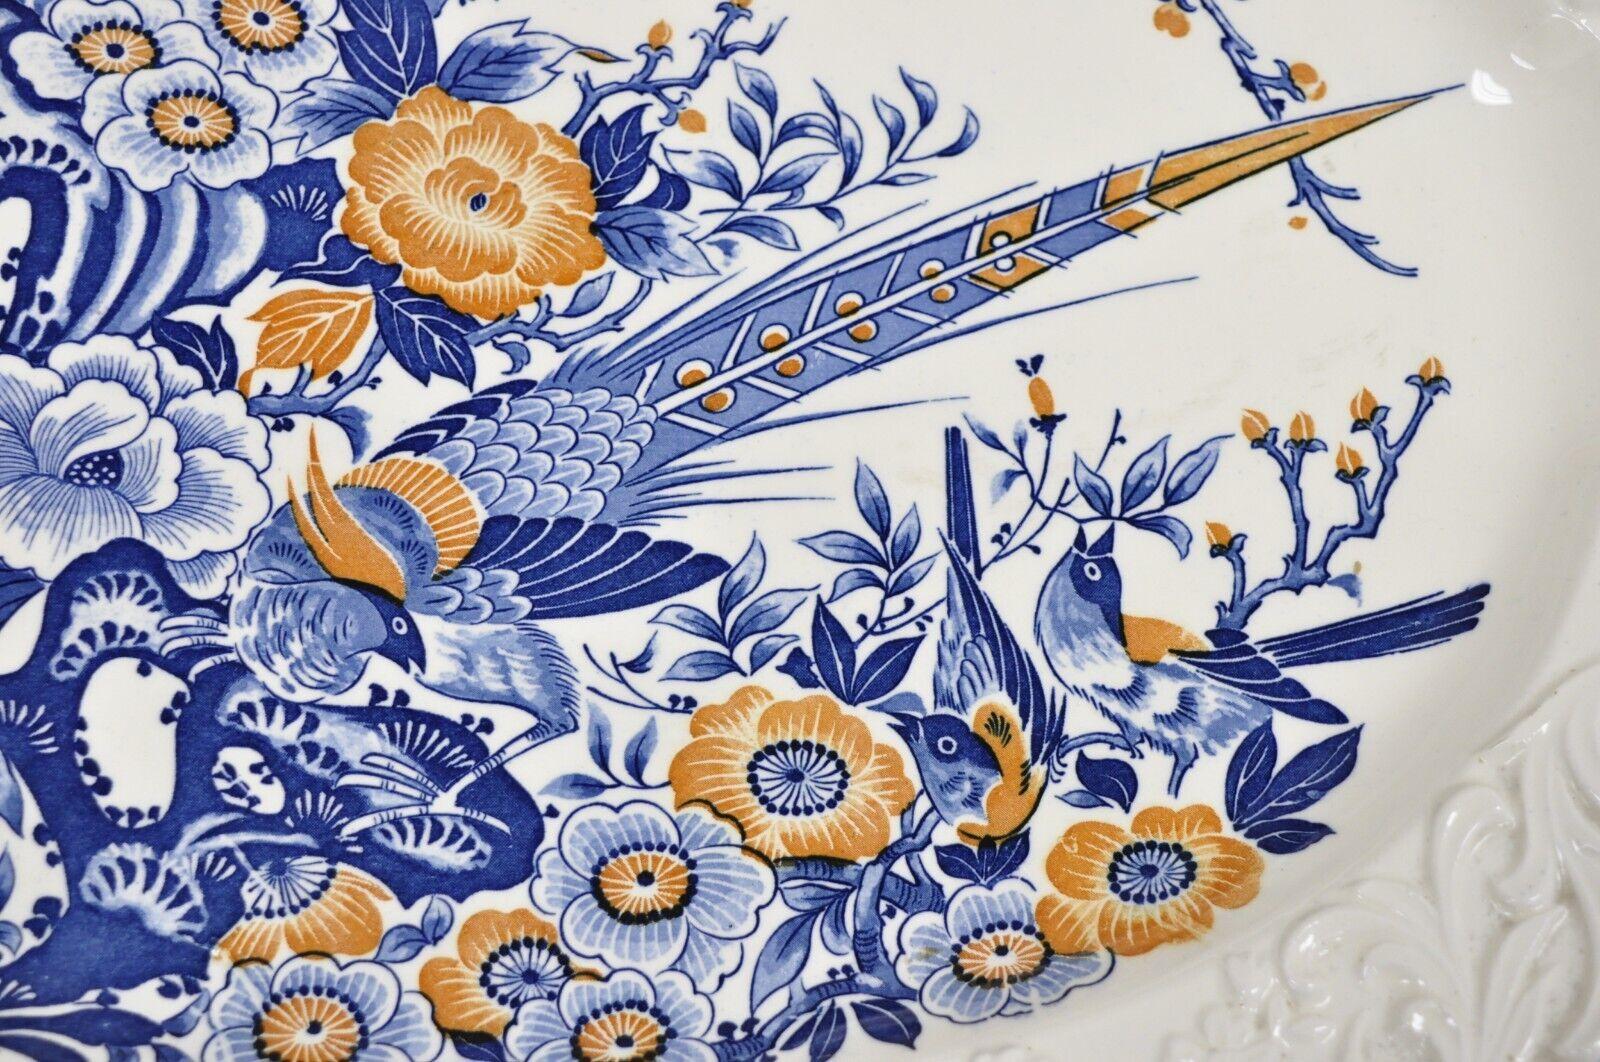 Chikusa Yokkaichi Japan Blue White Ceramic Chinese Bird Platter Dish Plate 1